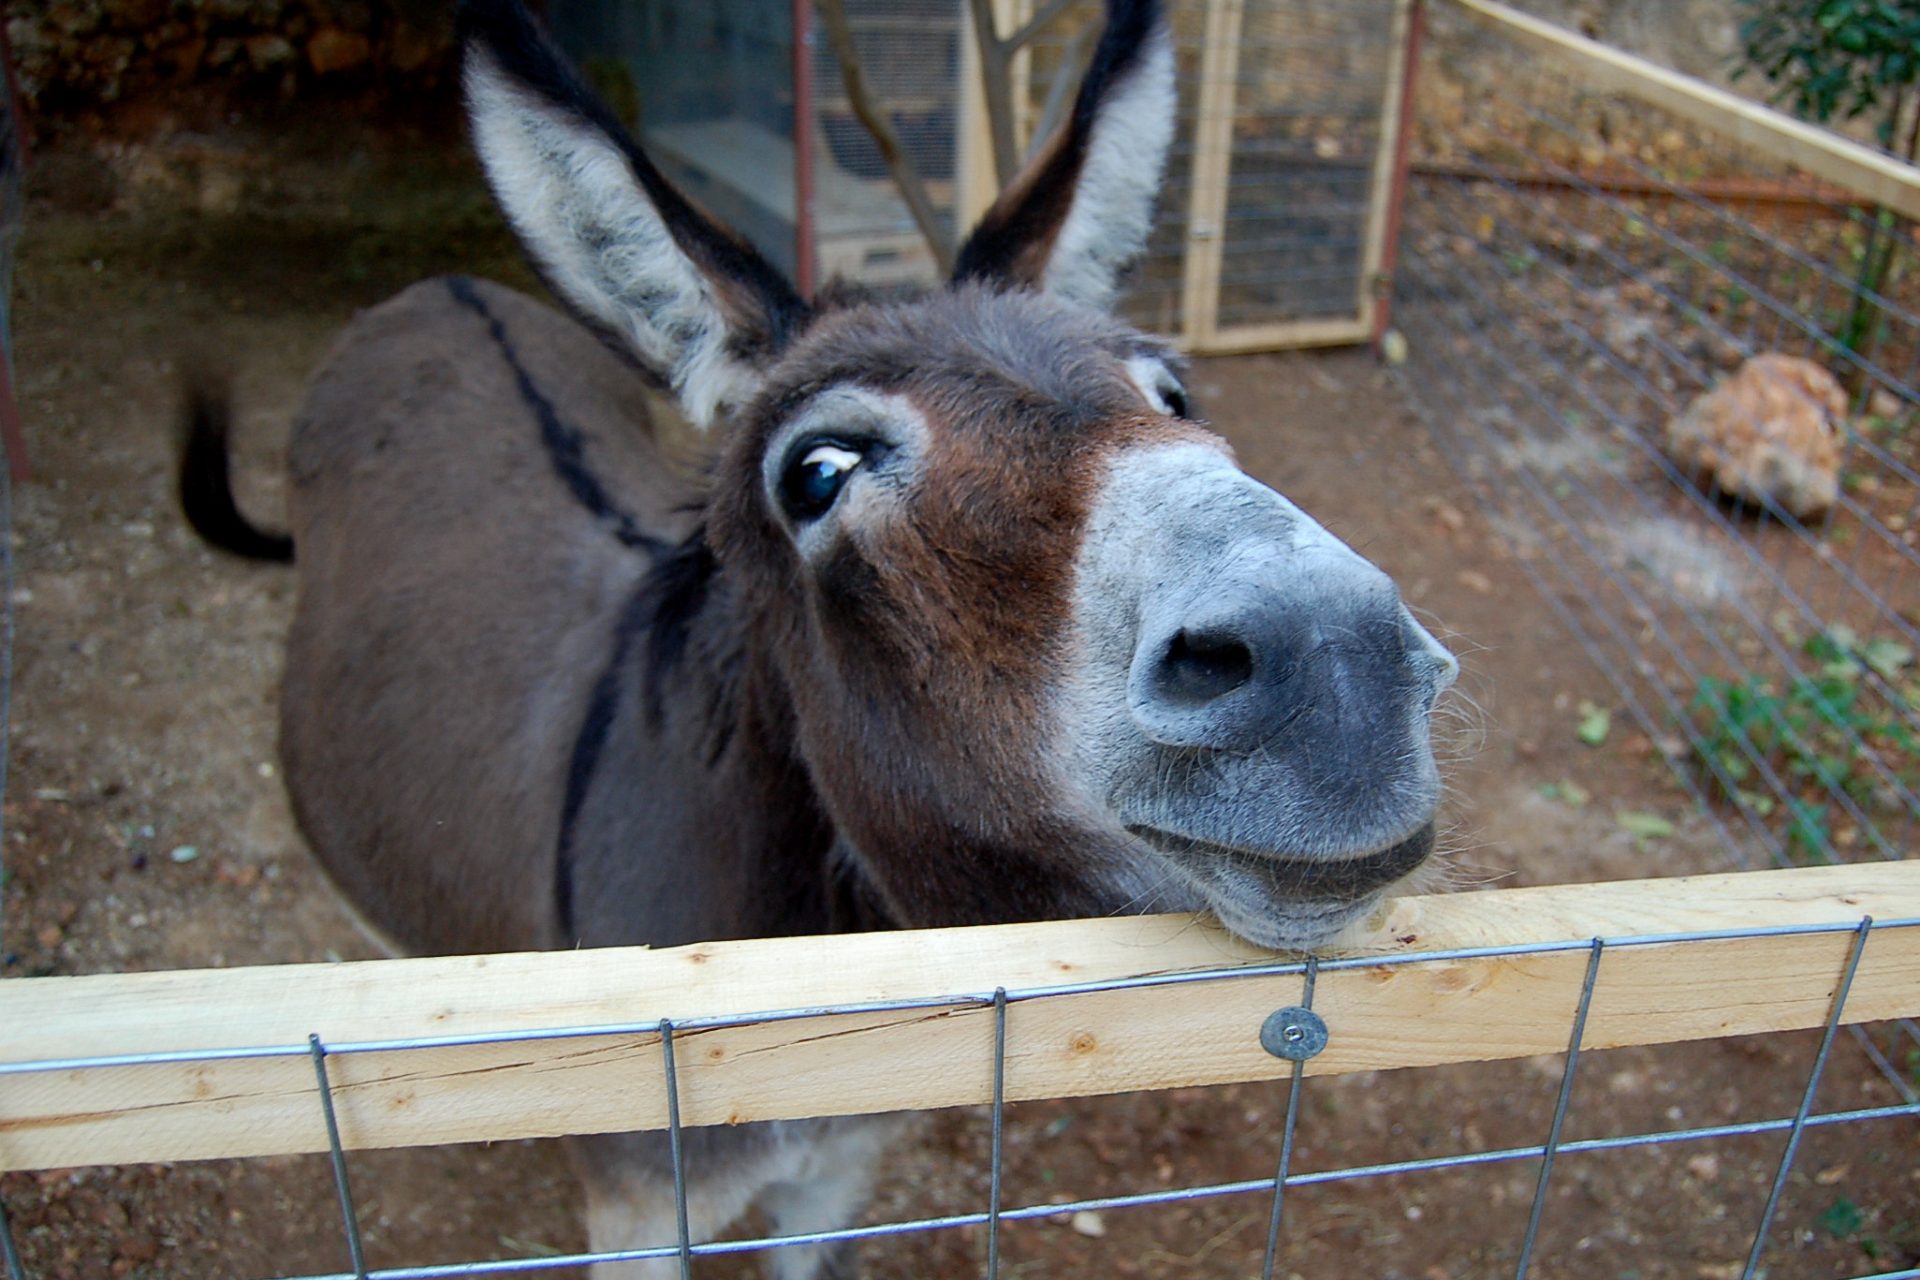 What do you call a three-legged donkey?